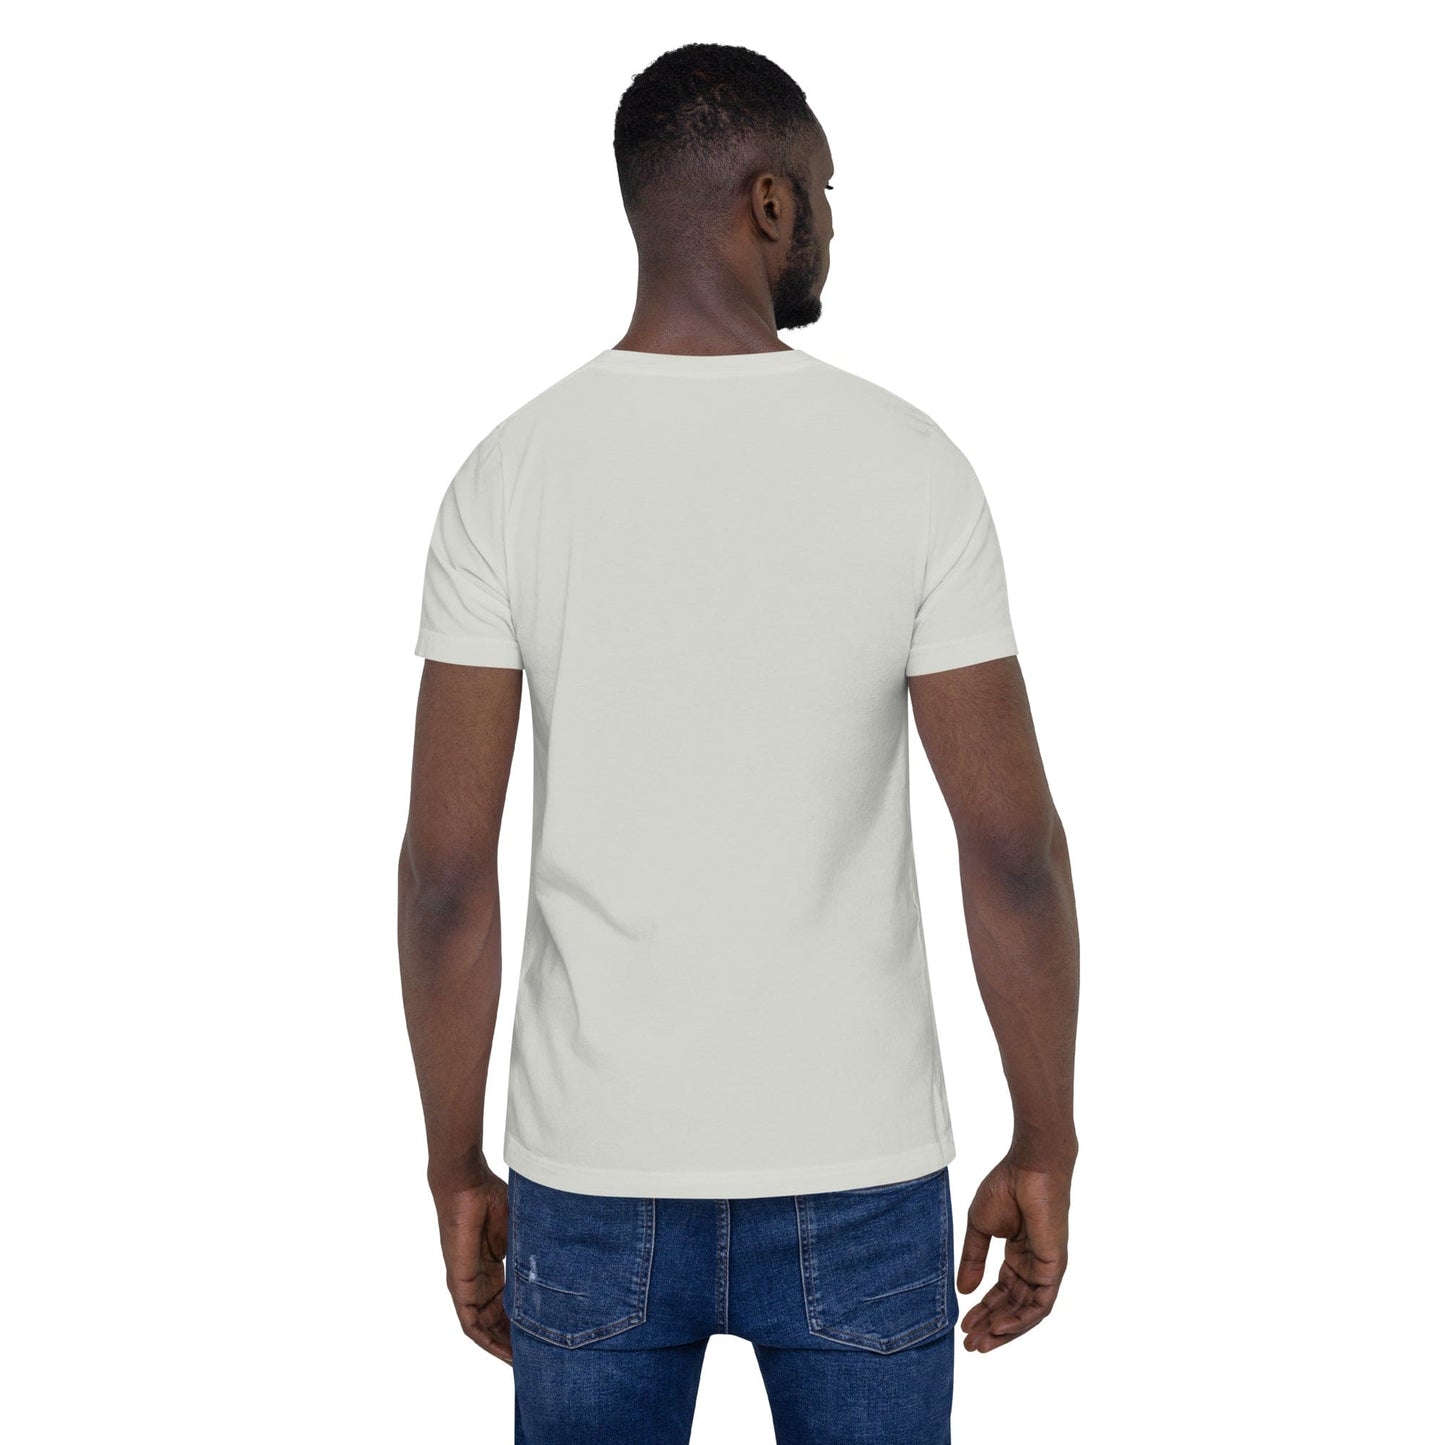 Unisex t-shirt "BETRAYED"